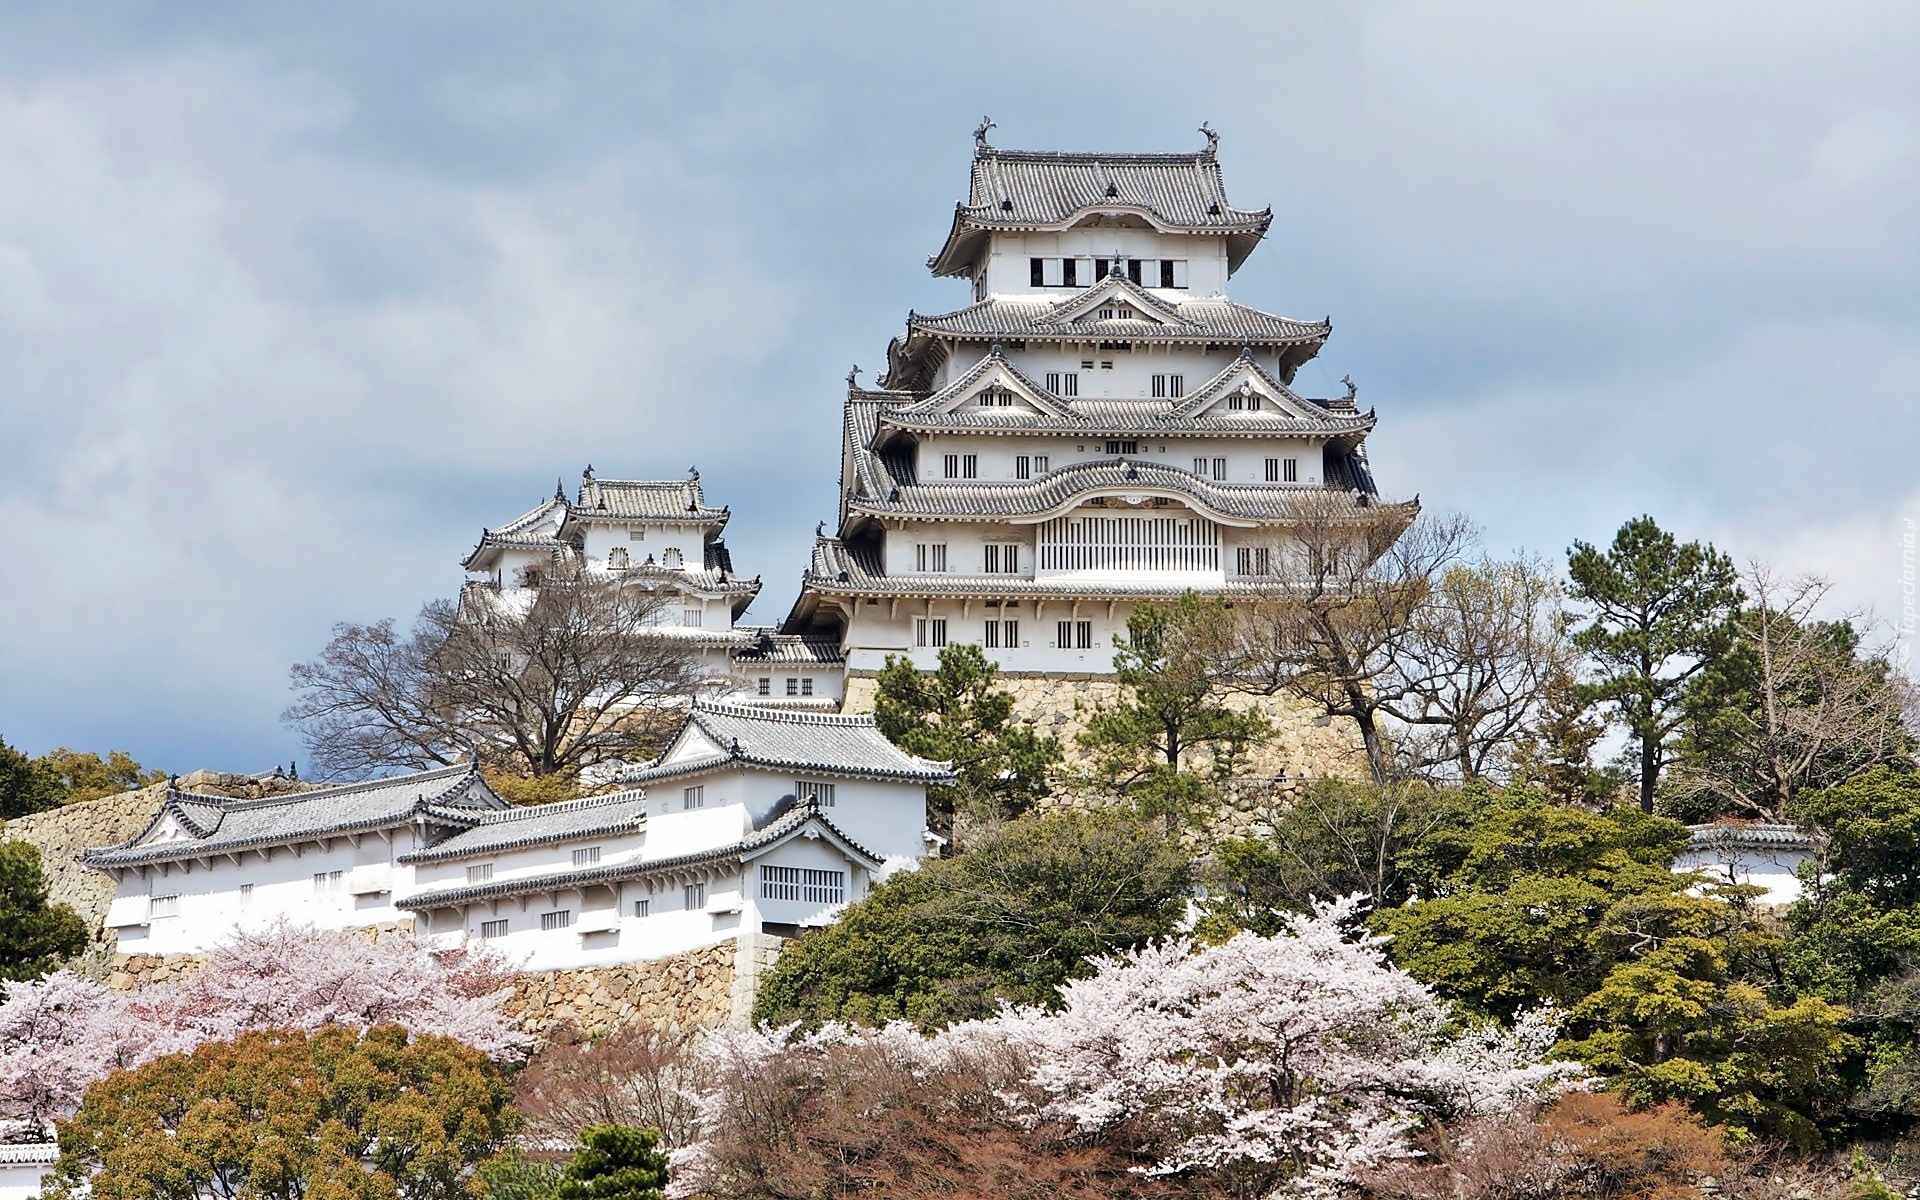 Zamek Himeji, Himeji-jō, Zamek Białej Czapli, Miasto Himeji, Japonia